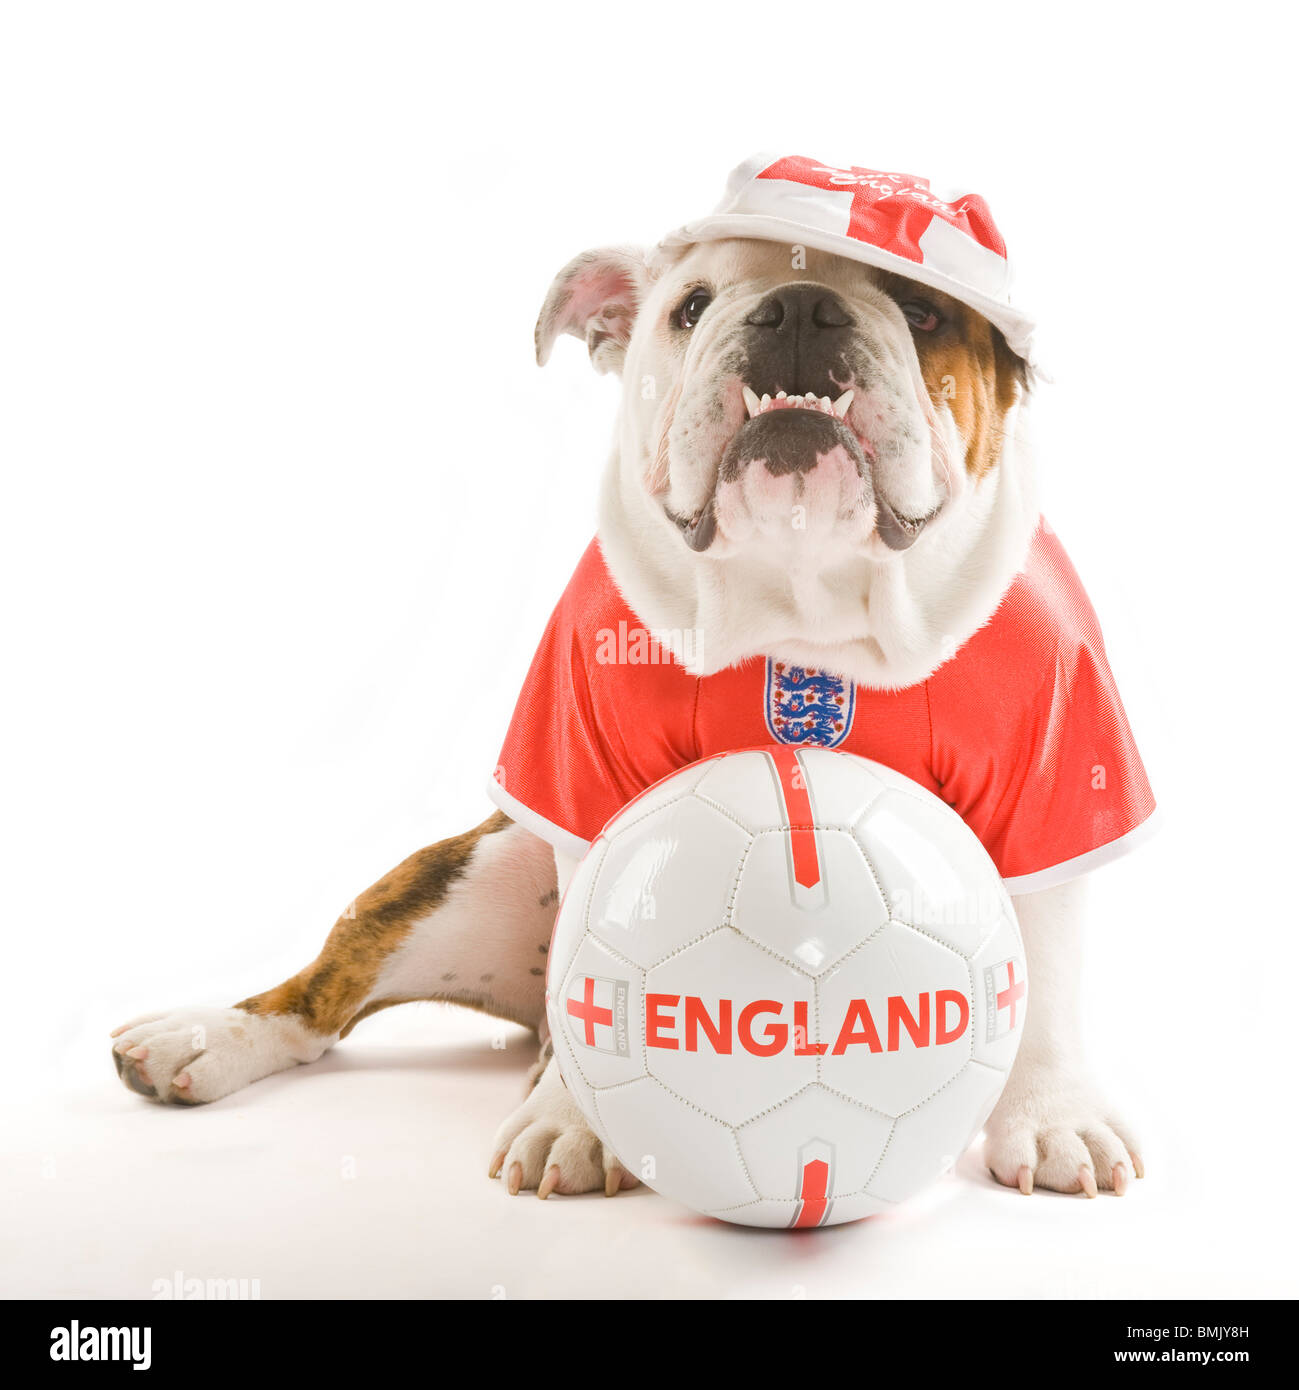 Un Bulldog Británico con una pelota de fútbol mientras llevaba una camiseta de fútbol del equipo de Inglaterra y la tapa sobre un fondo blanco. Foto de stock